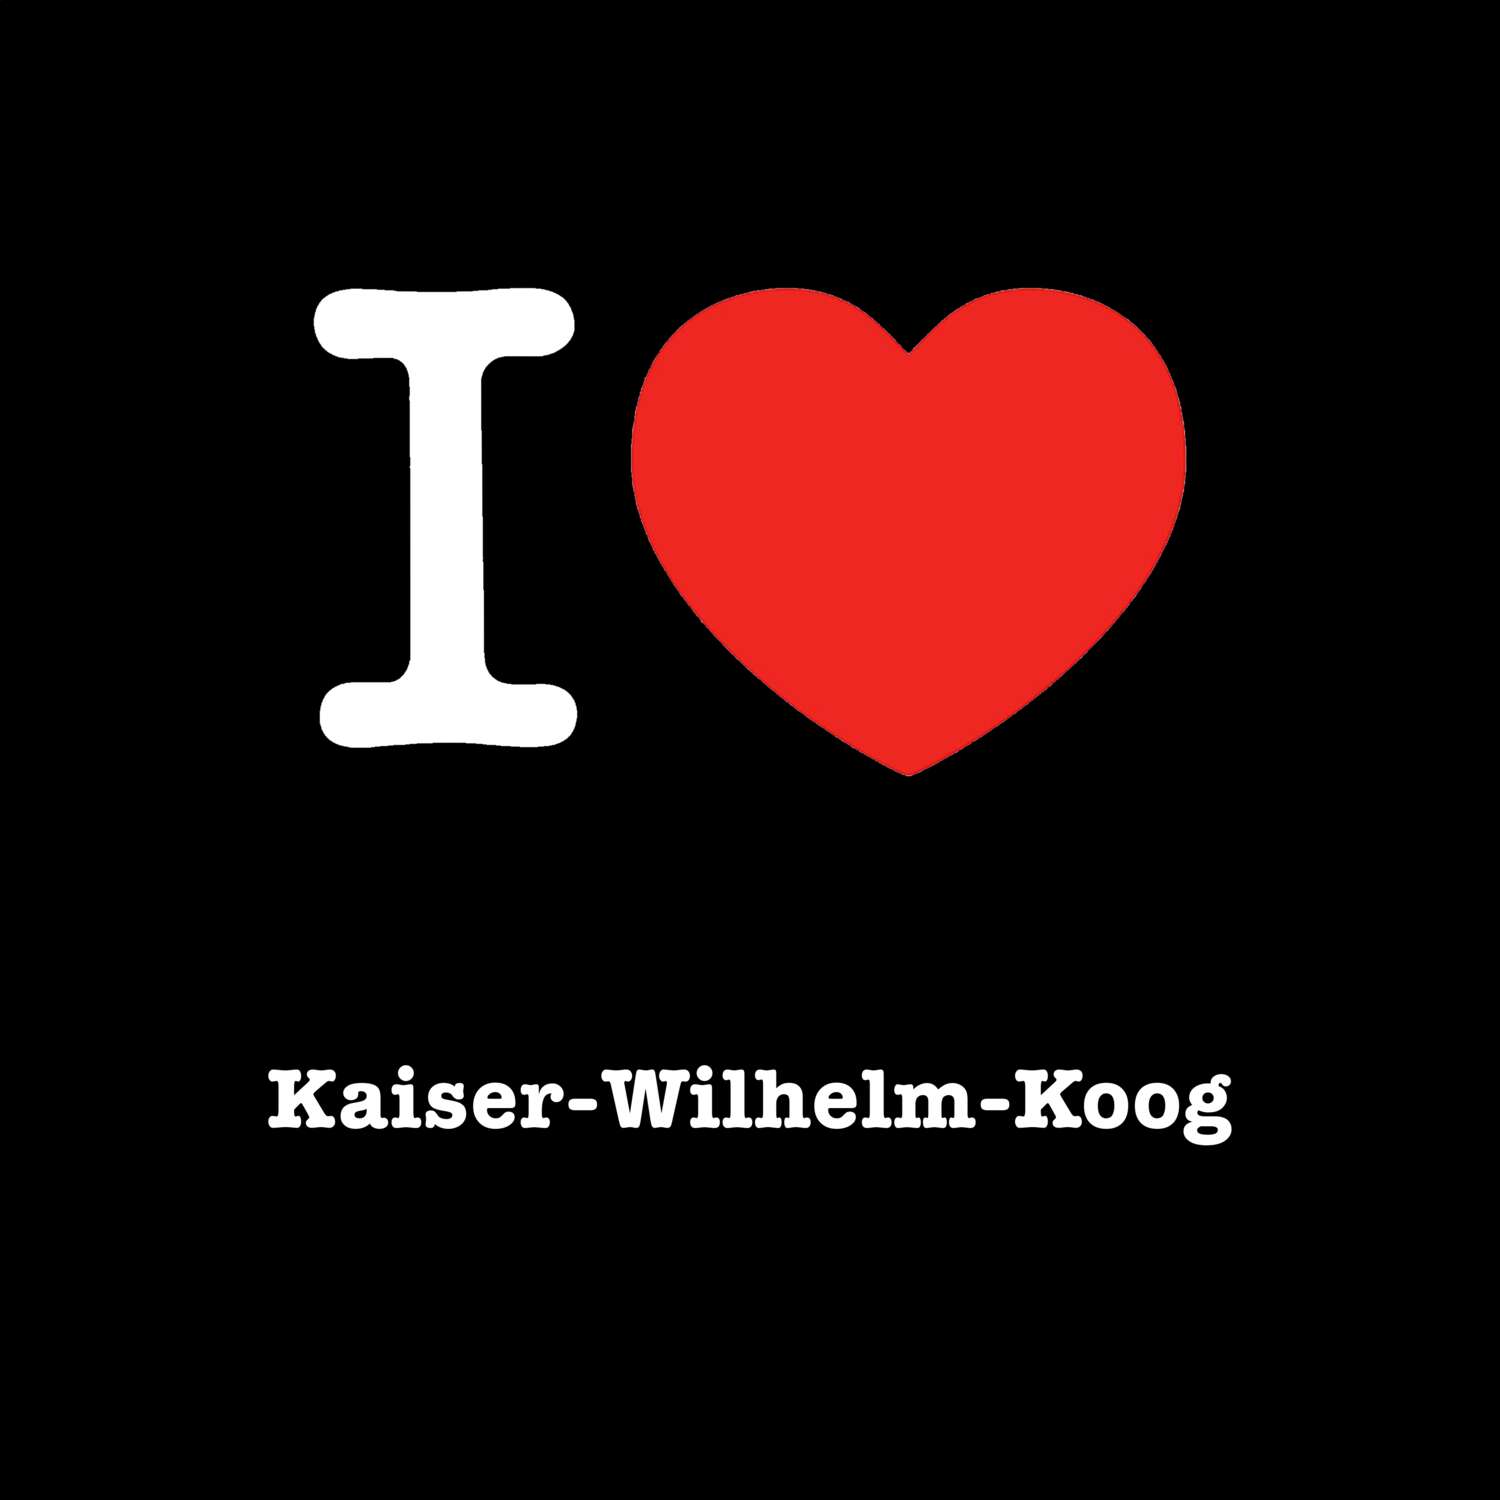 Kaiser-Wilhelm-Koog T-Shirt »I love«